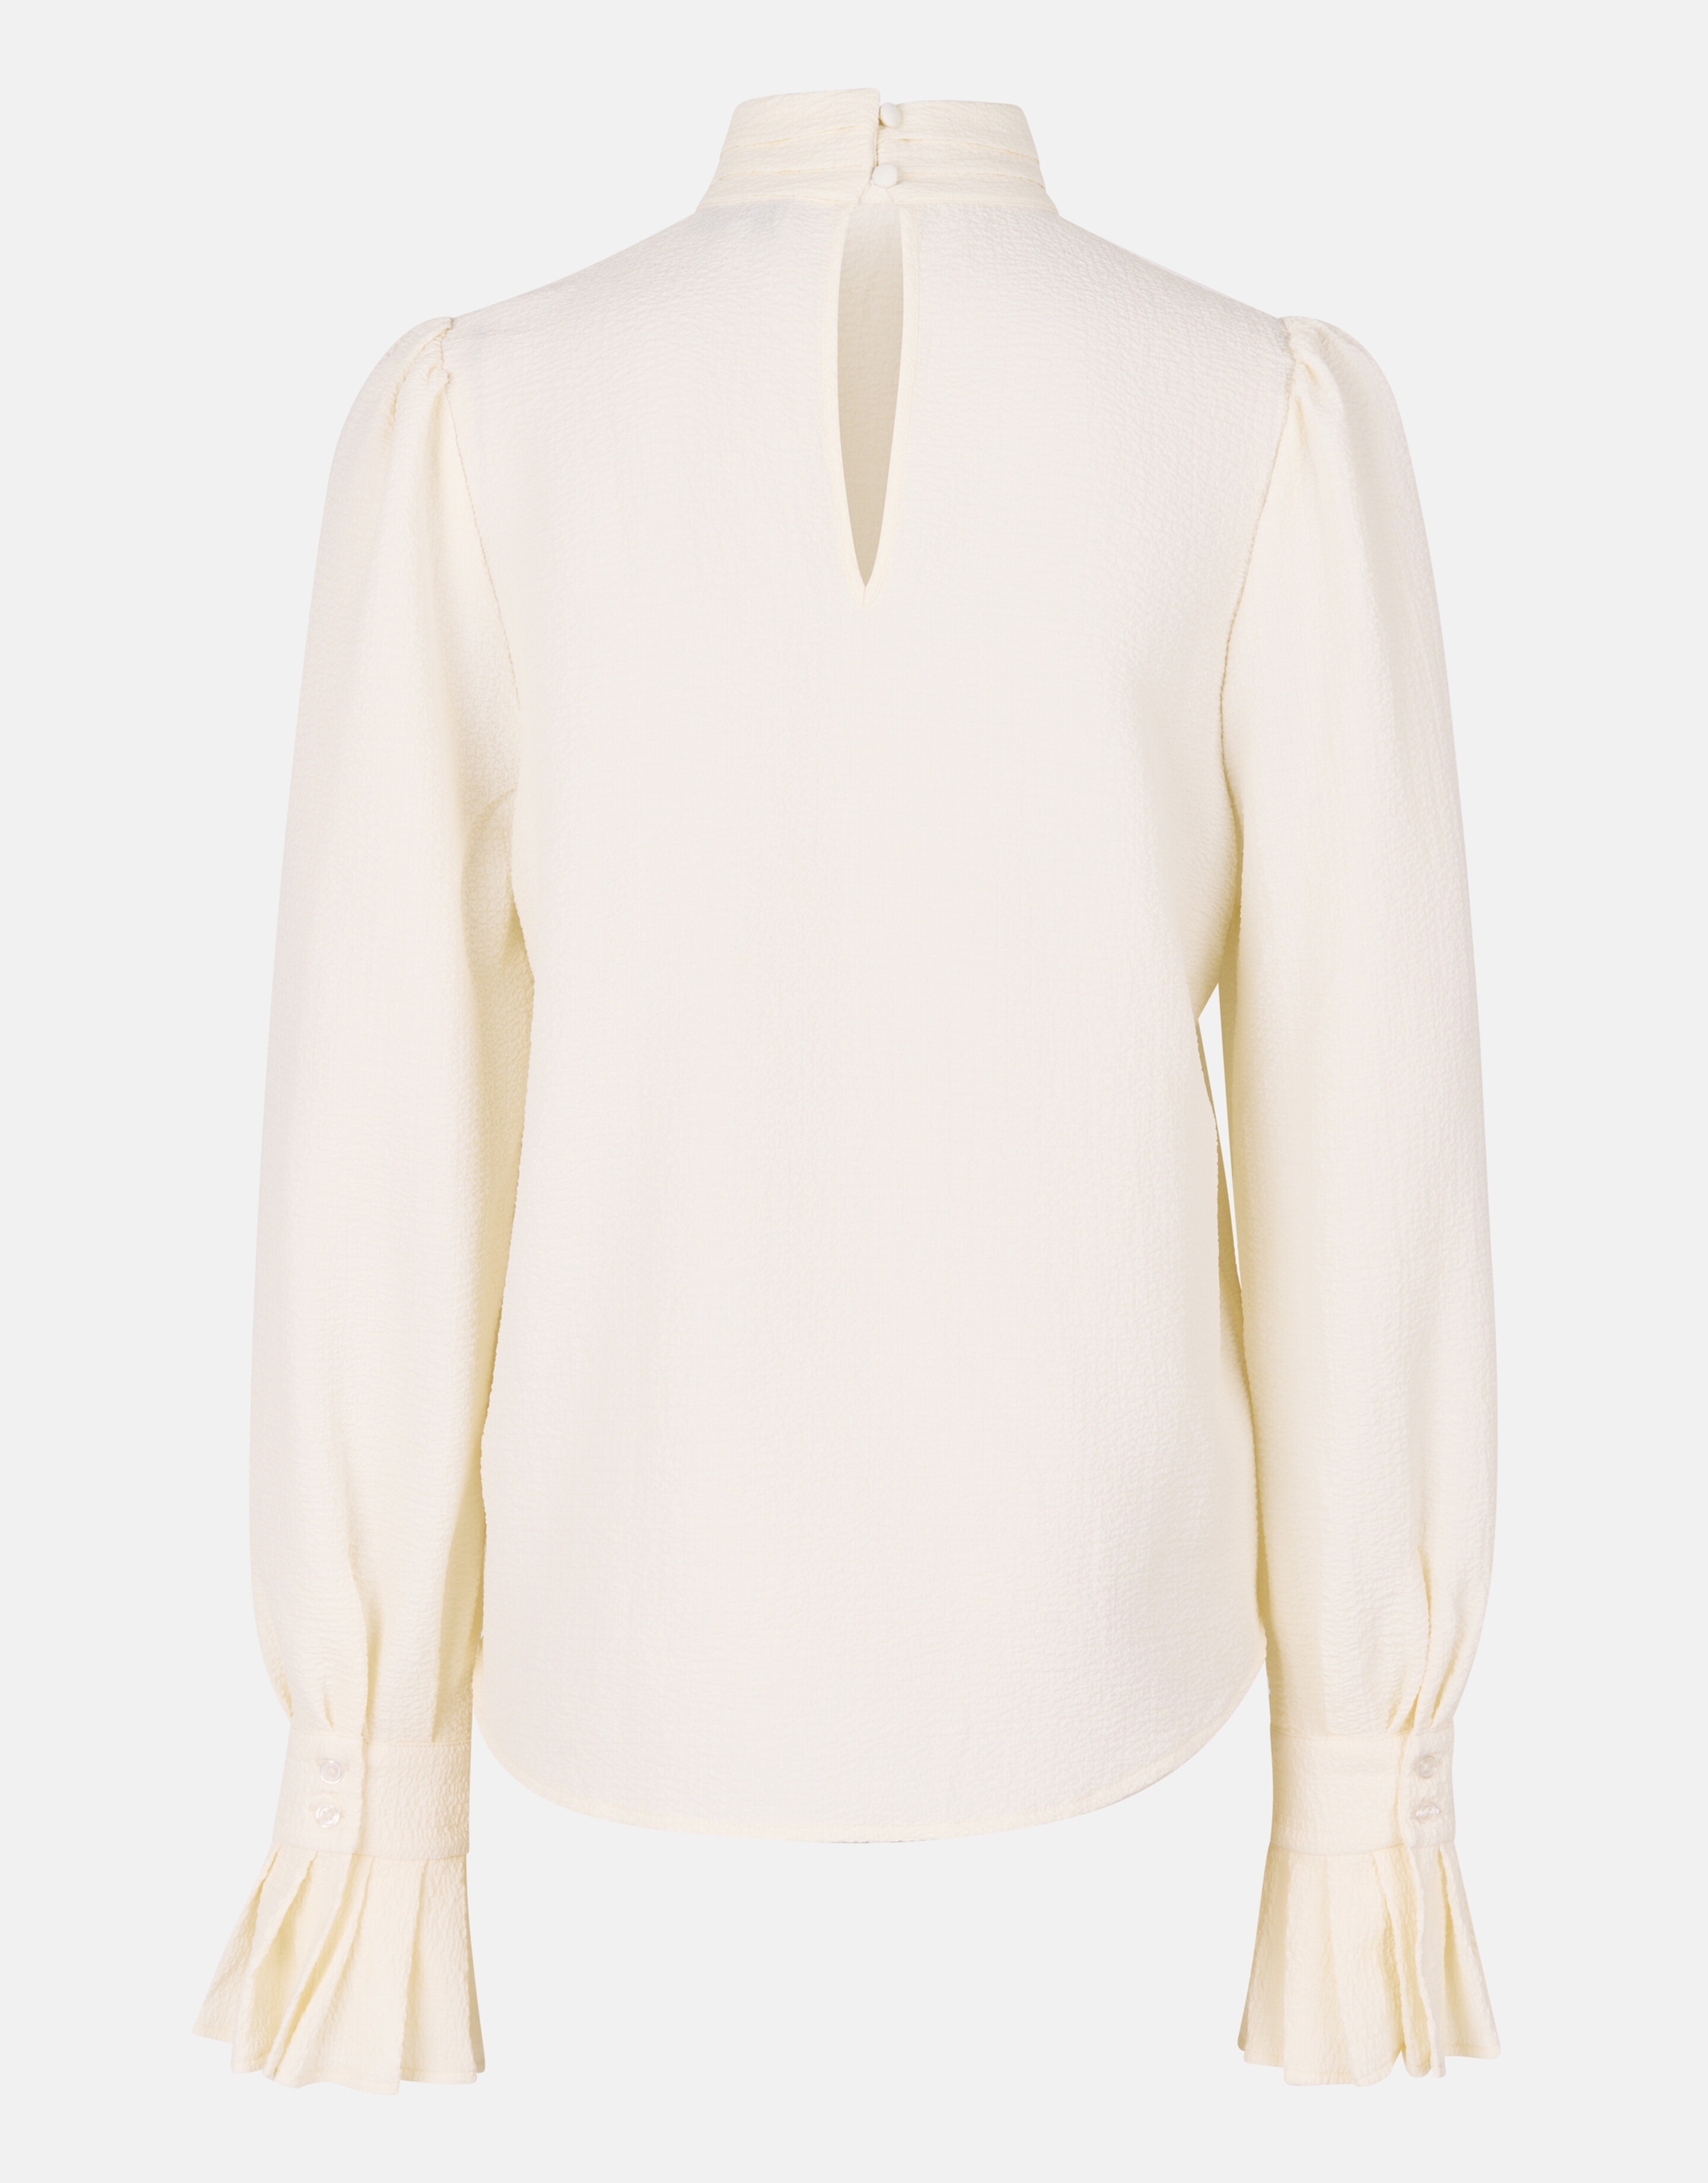 Bluse mit voluminösen Ärmeln Off White By Fred SHOEBY WOMEN